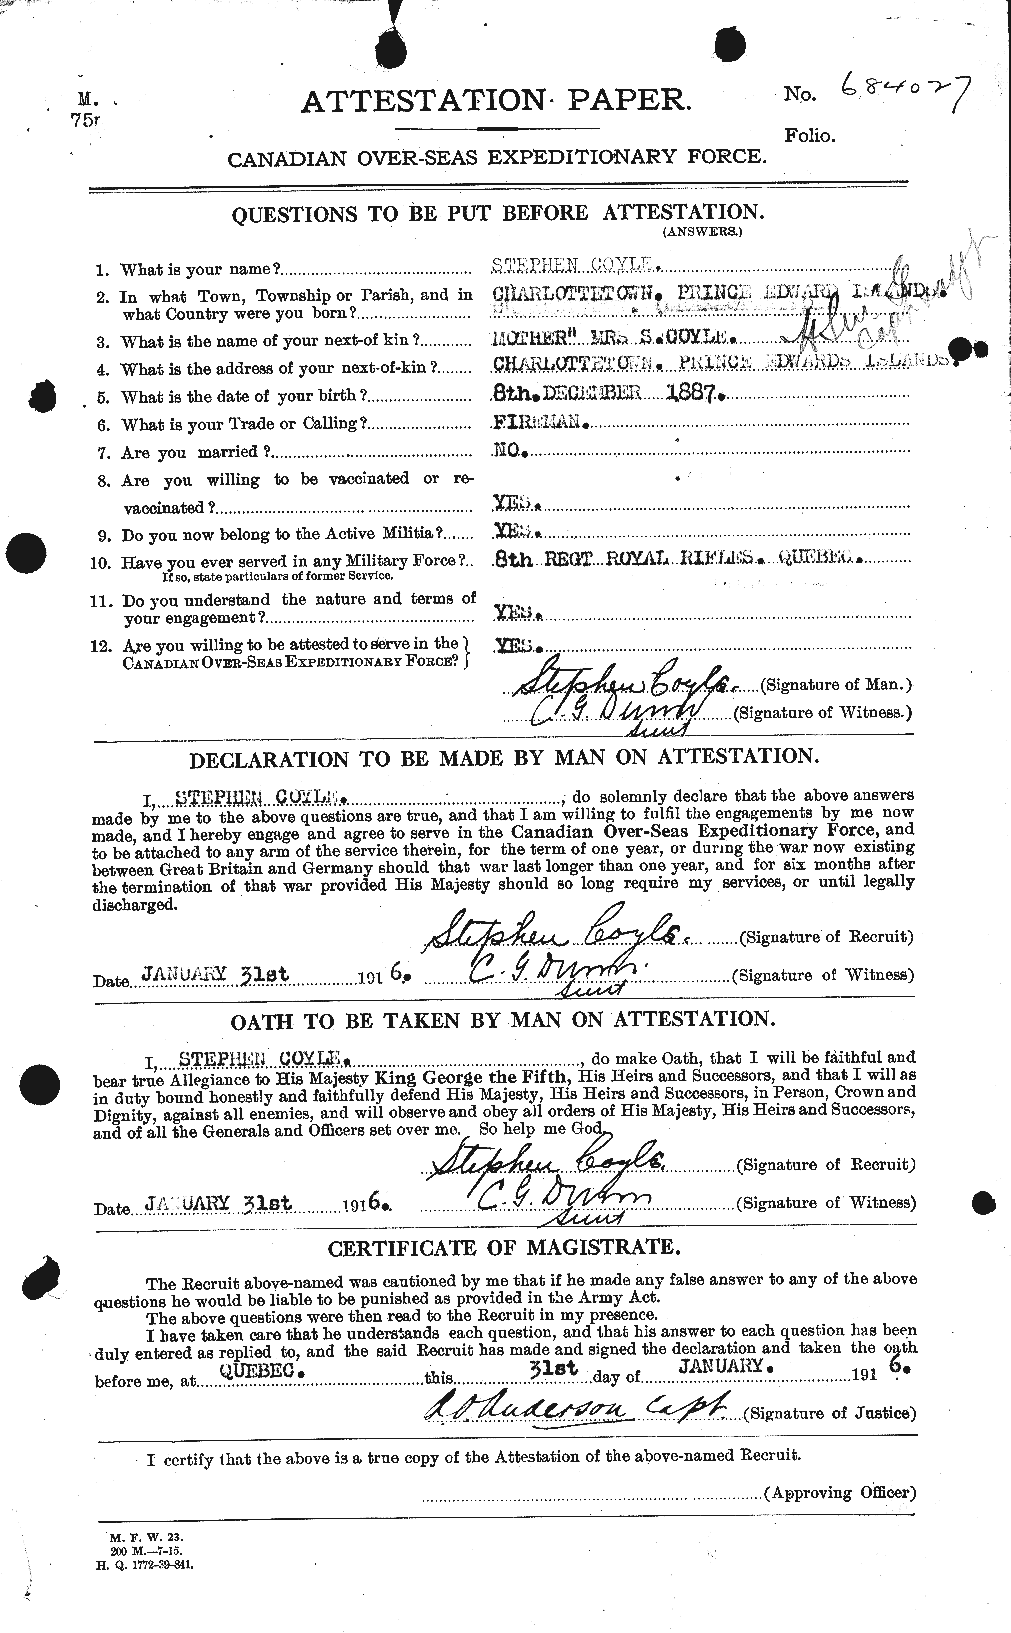 Dossiers du Personnel de la Première Guerre mondiale - CEC 062343a